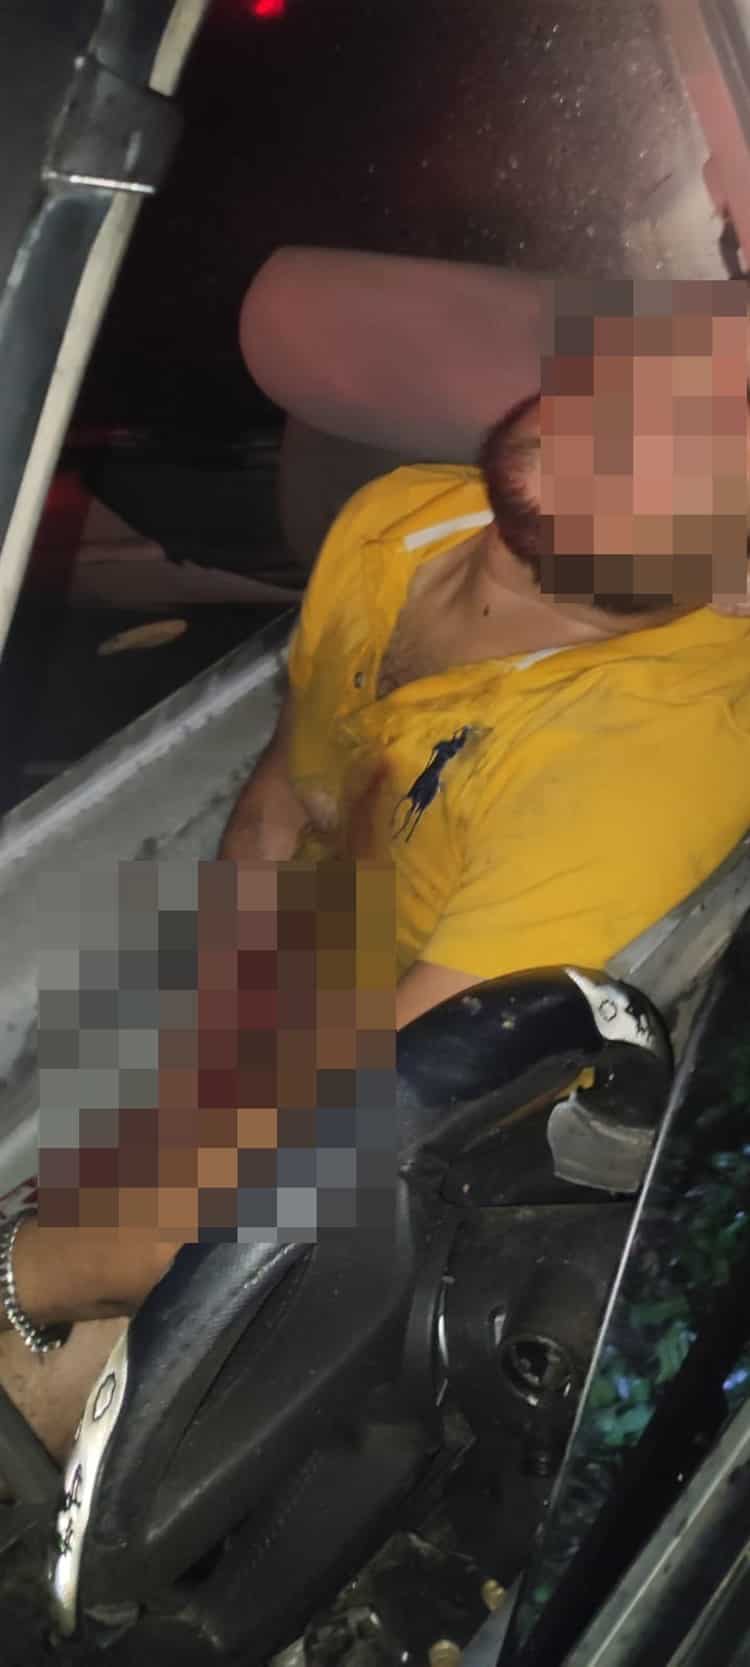 Fallece poblano tras impactarse contra valla metálica en la autopista 145D  Acayucan - La Tinaja